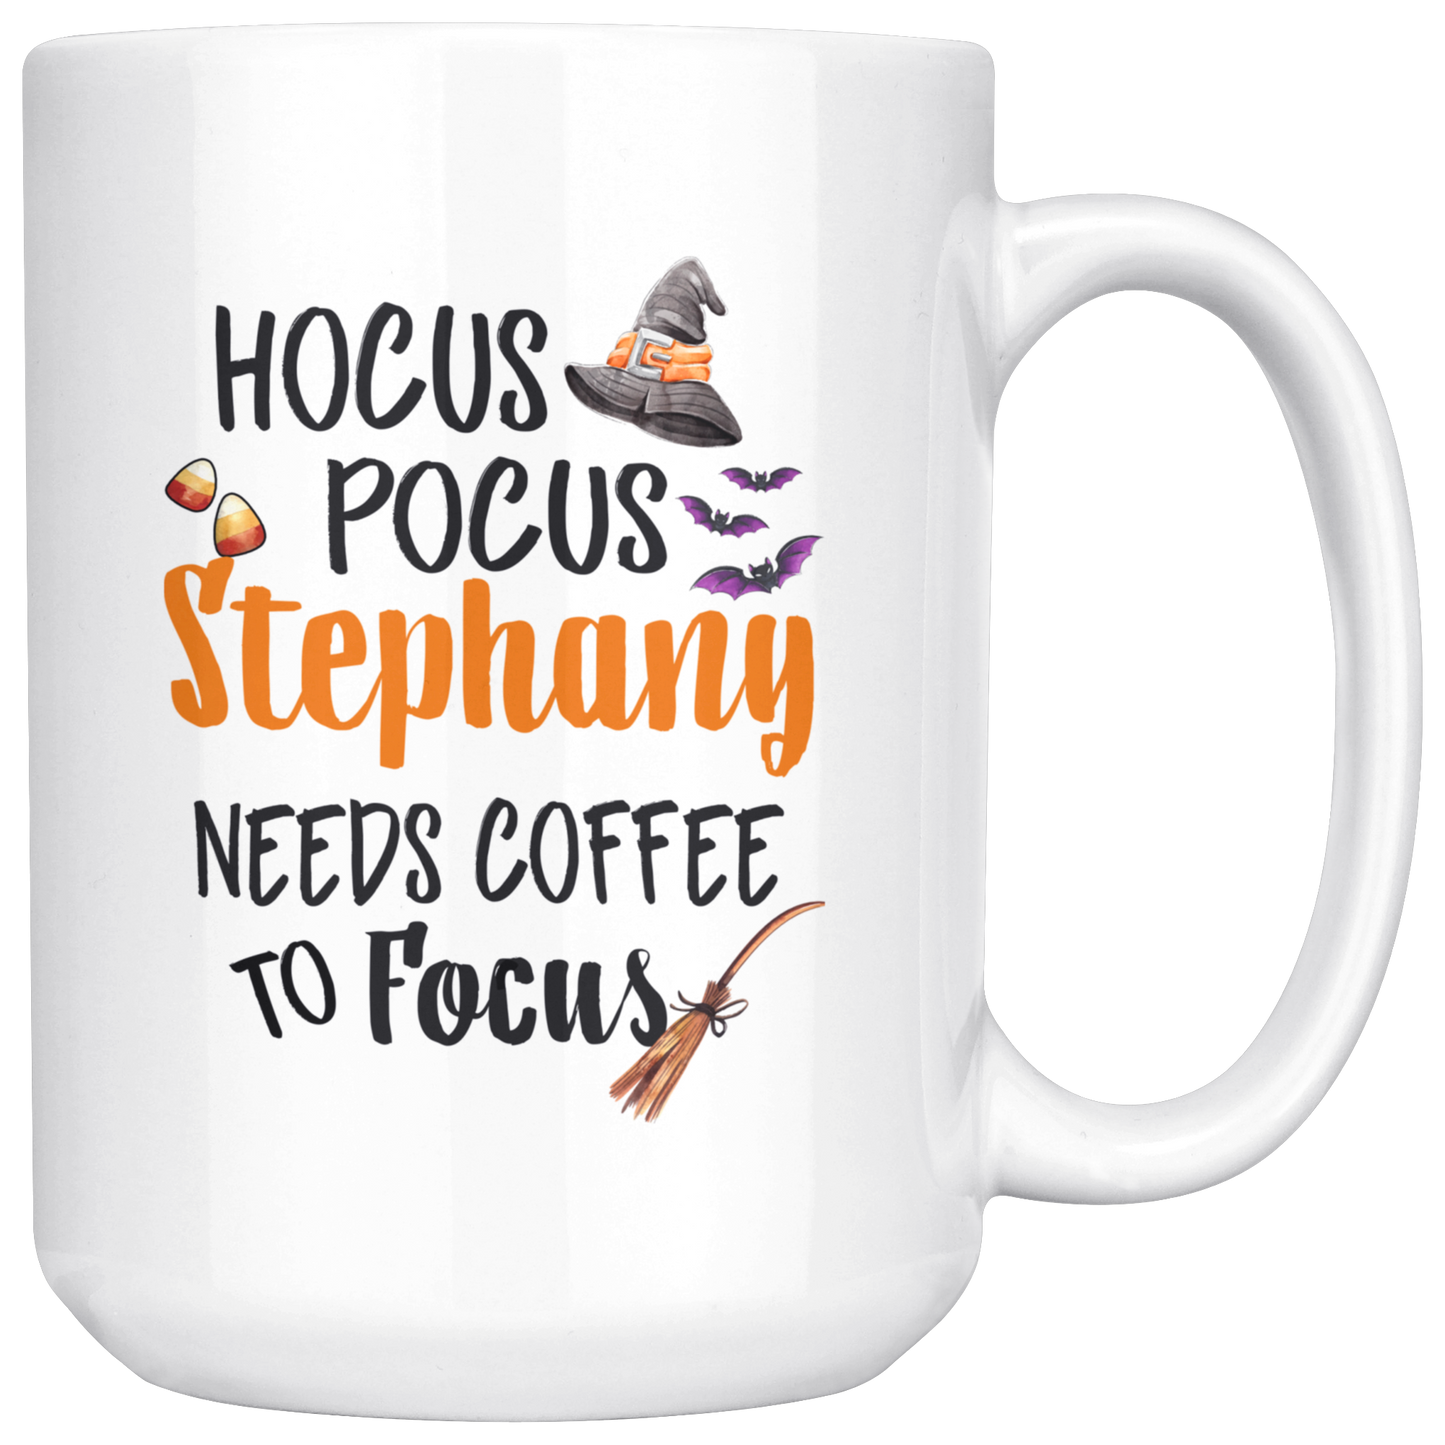 ND-20836314-sp-25658 - [ Stephany | 1 | 1 ] (mug_15oz_white) Hocus Pocus Stephany Needs Coffee To Focus - Halloween Coffe